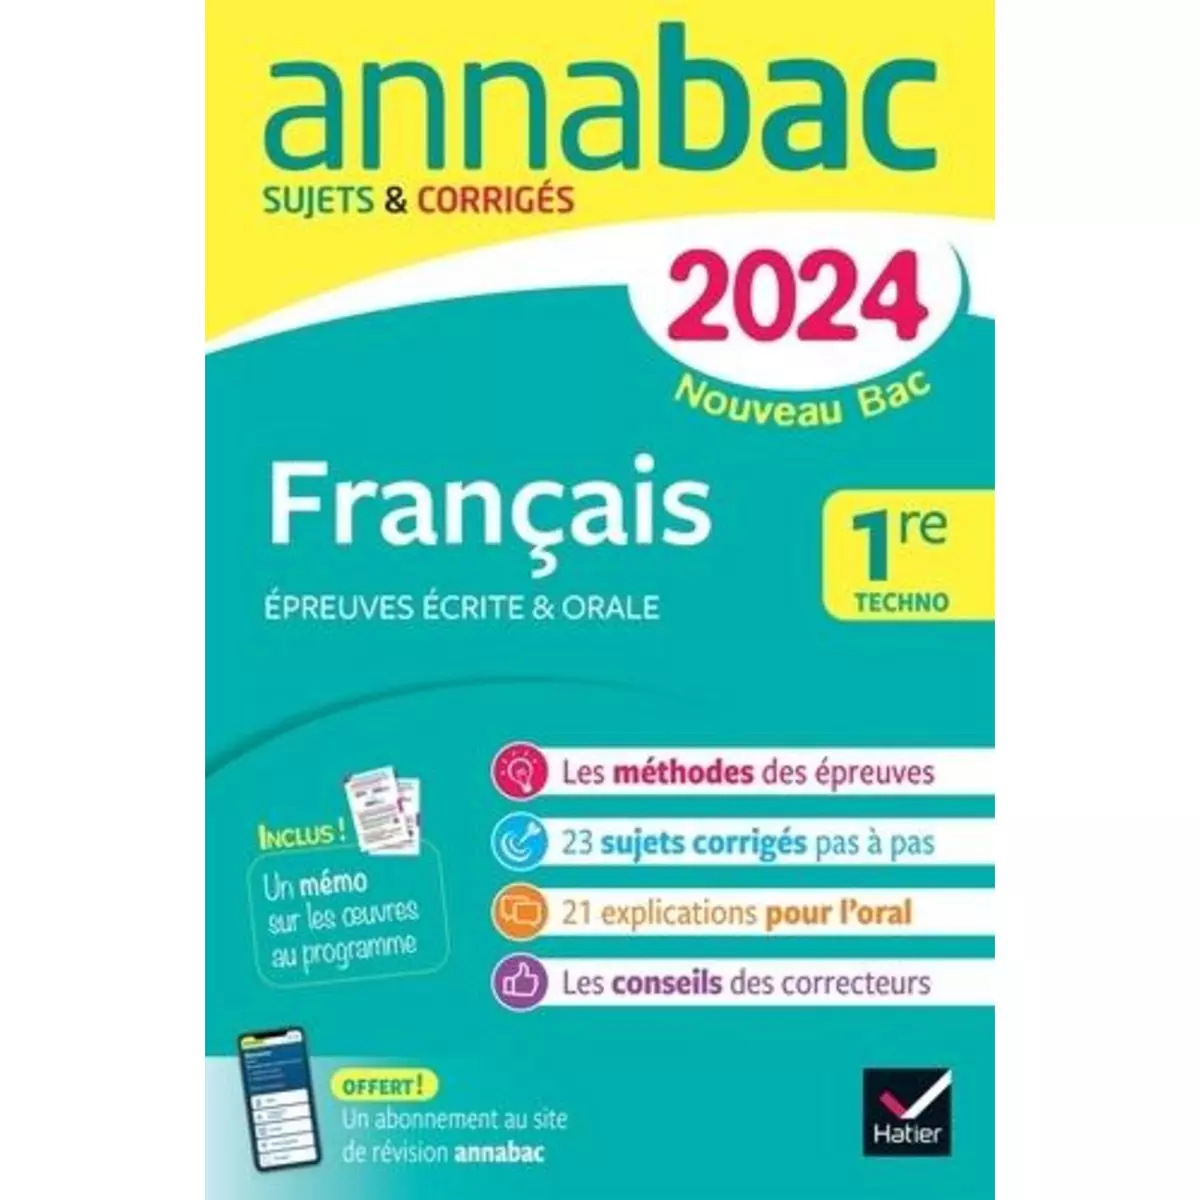  FRANCAIS 1RE TECHNO. SUJETS & CORRIGES, EDITION 2024, Bernard Hélène